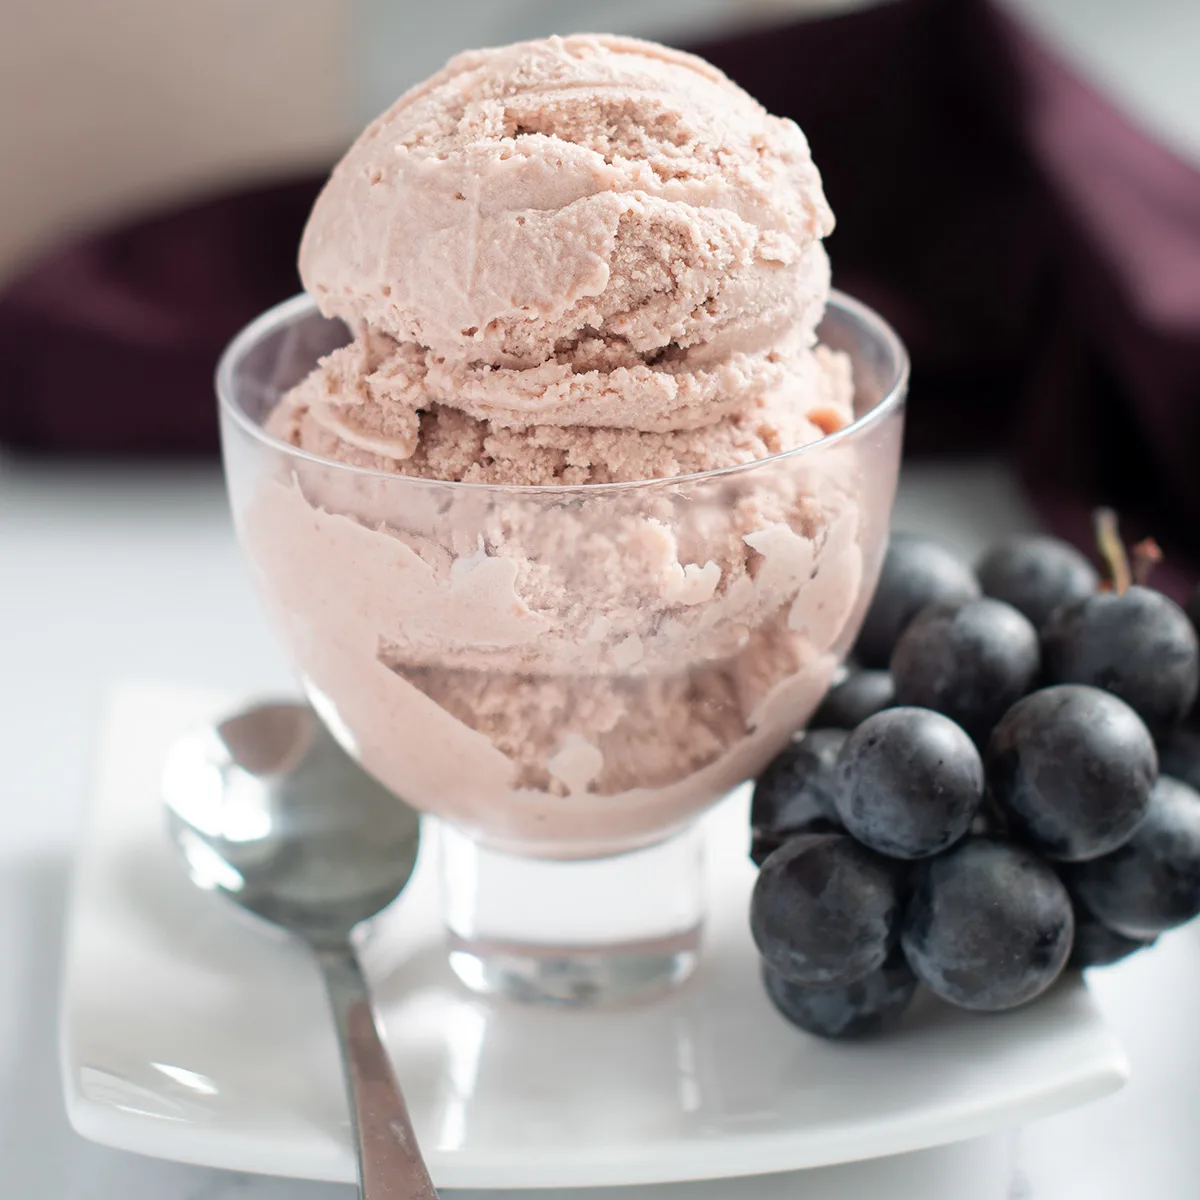 Concord Grape Ice Cream